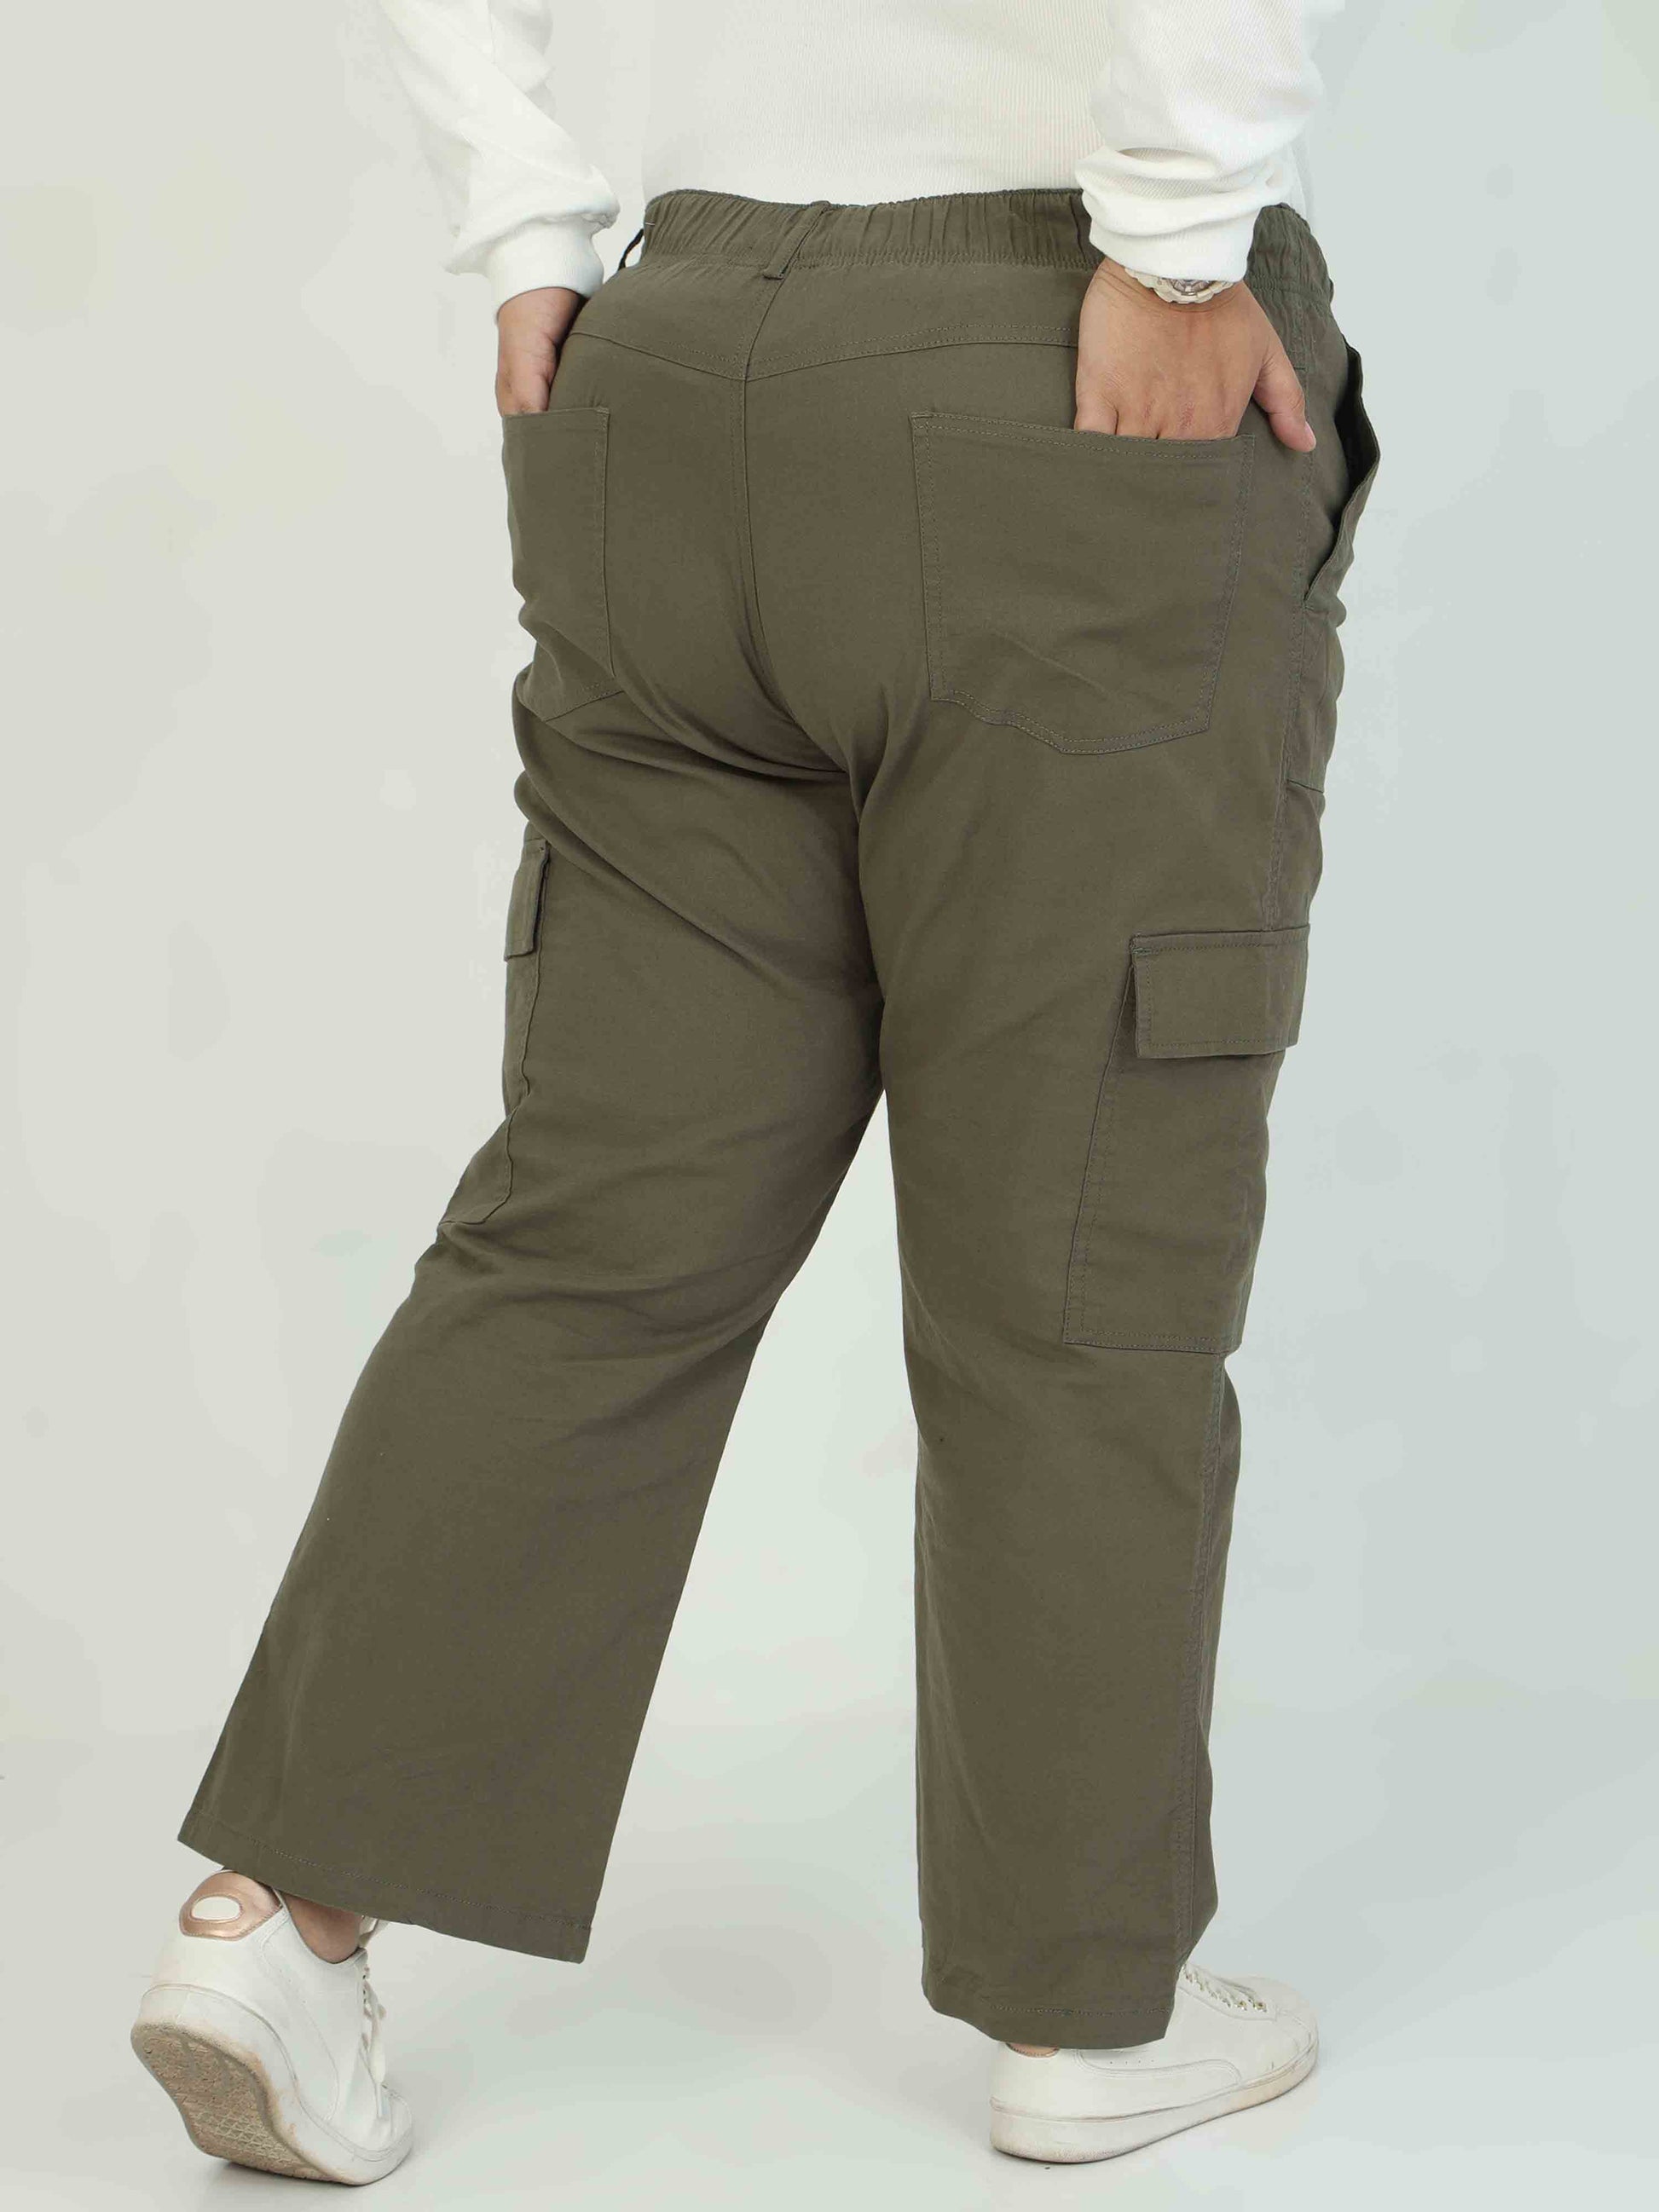 Fern Women's Plus Size Cargo Pants